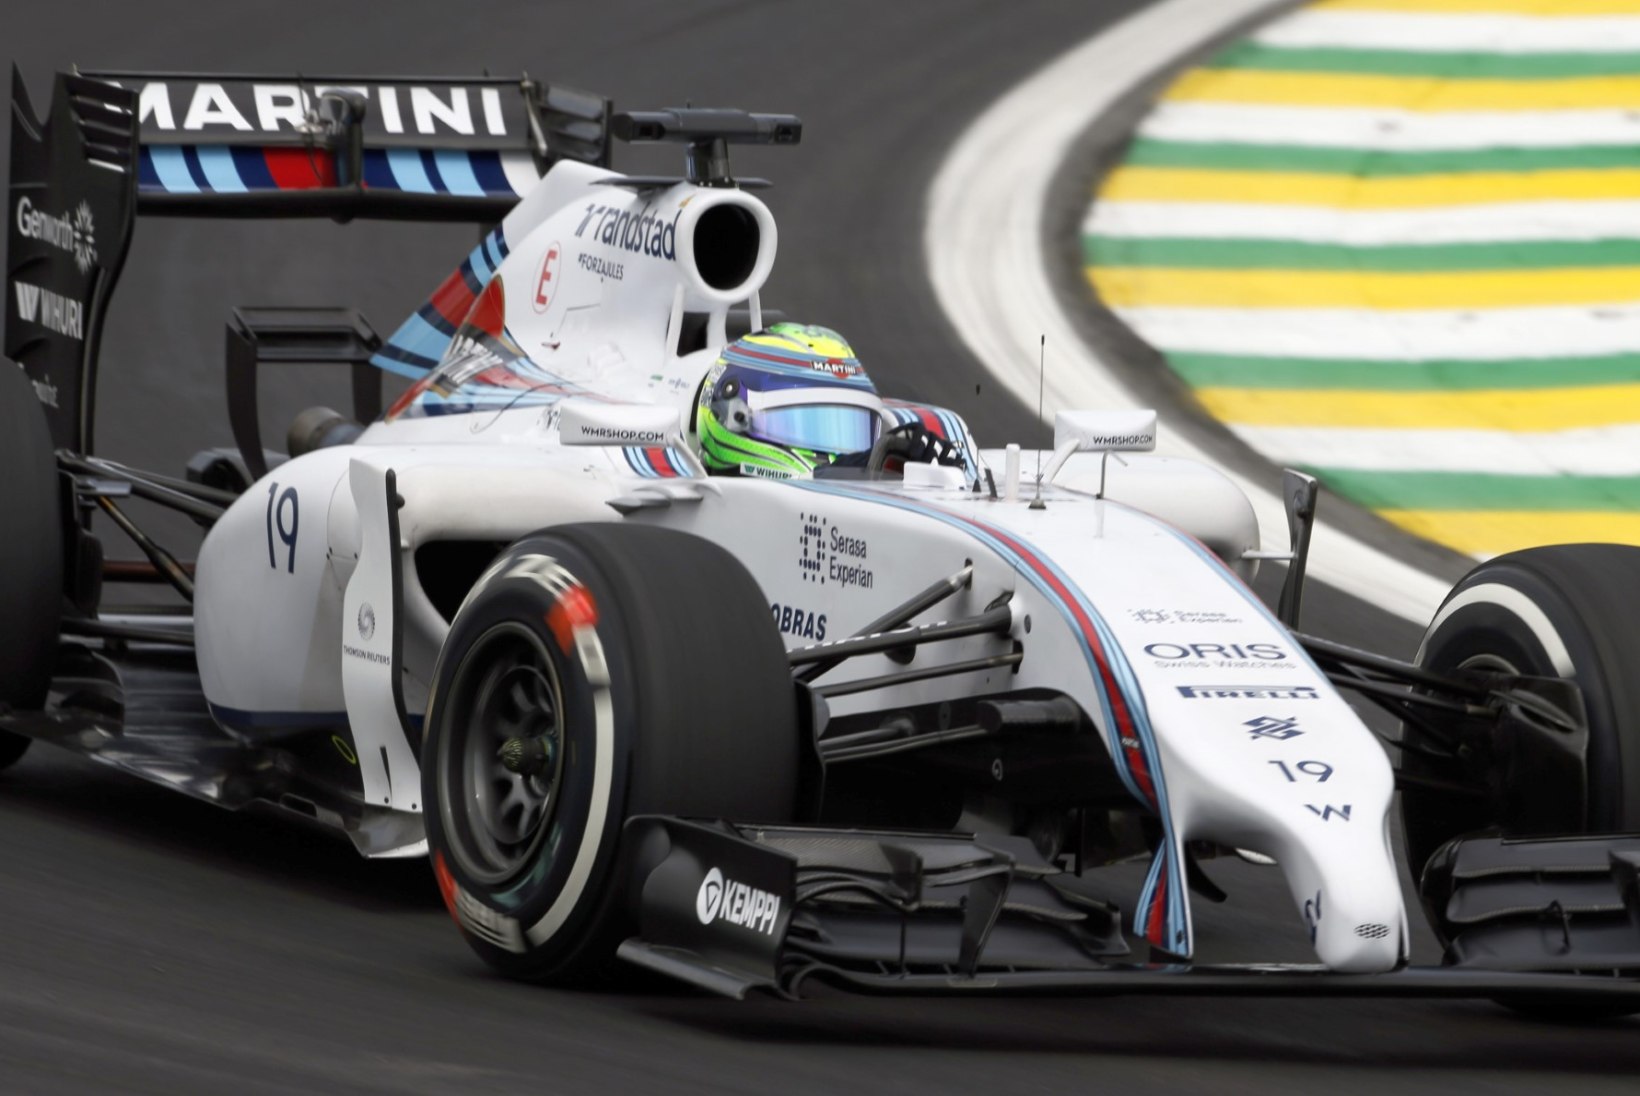 GALERII: Rosberg näitas vabatreeningutel Hamiltonile hambaid